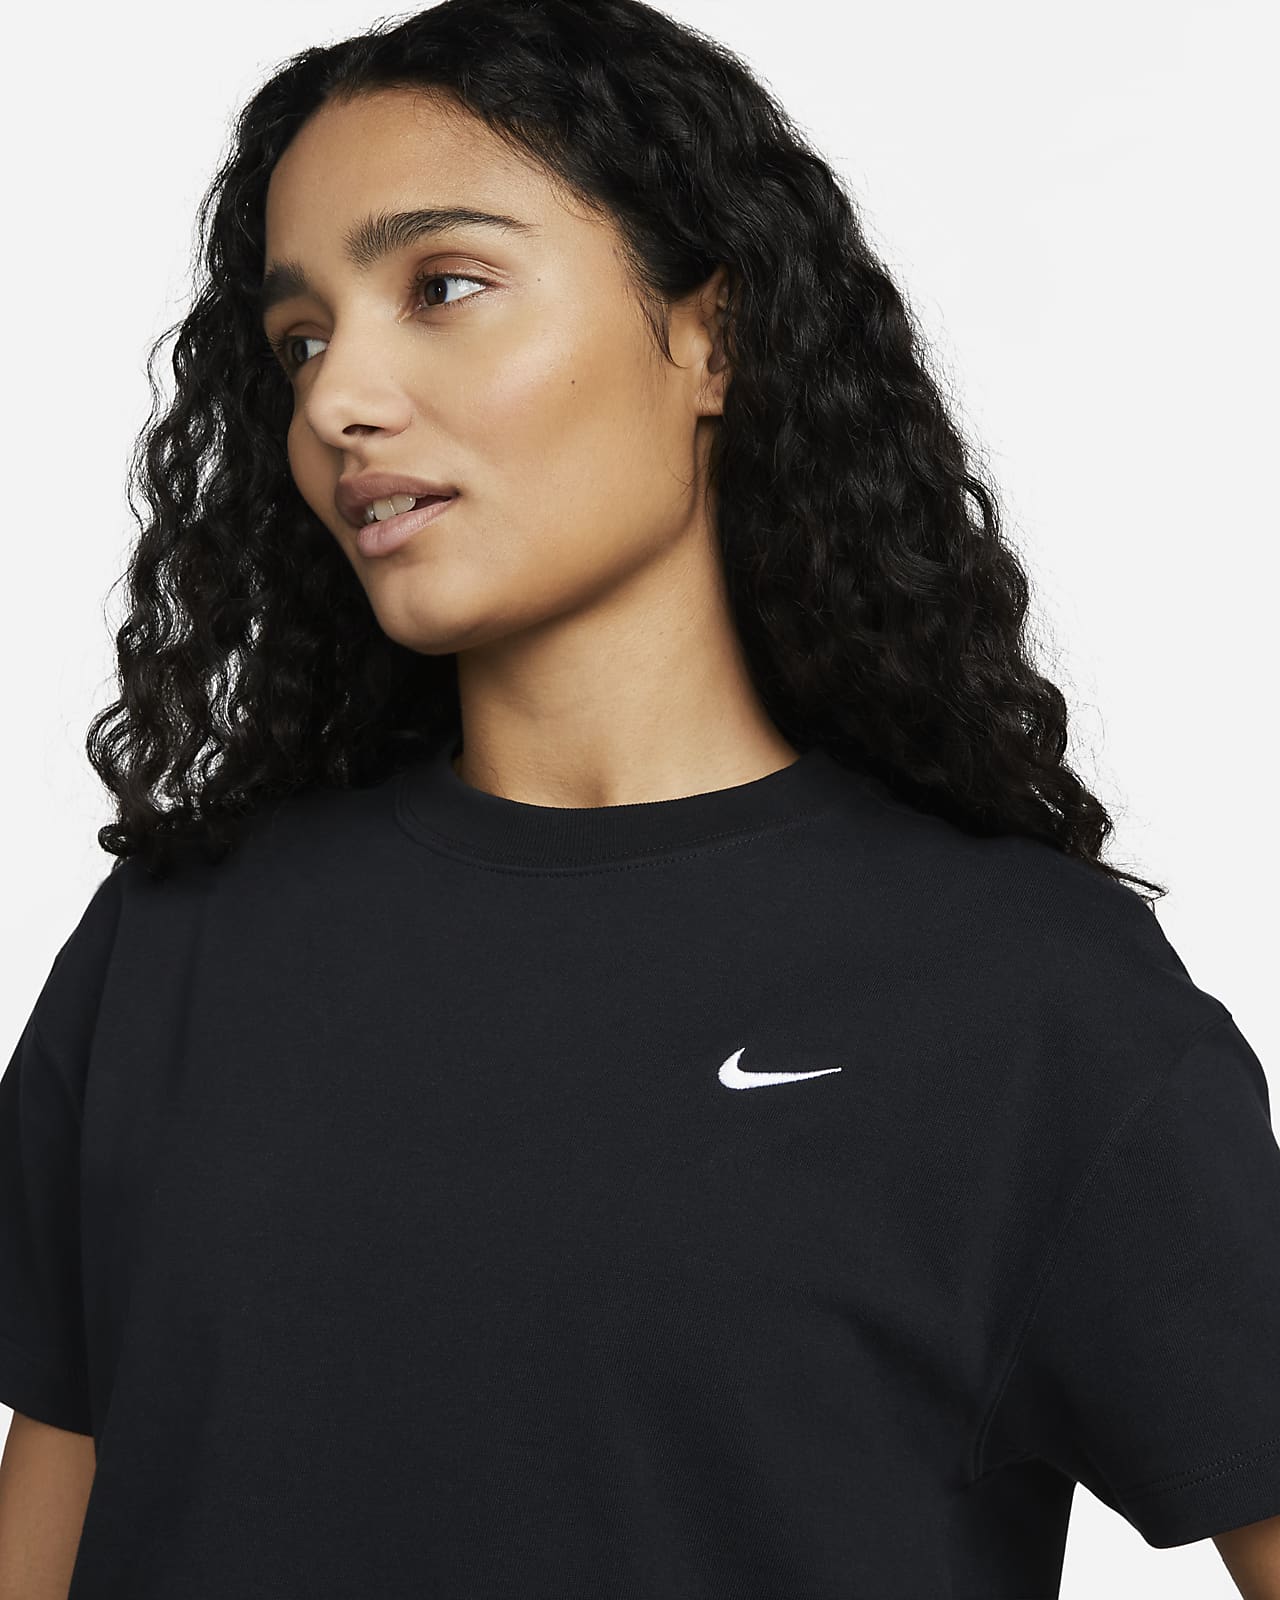 Beperken het kan Exclusief Nike Solo Swoosh Women's T-Shirt. Nike.com